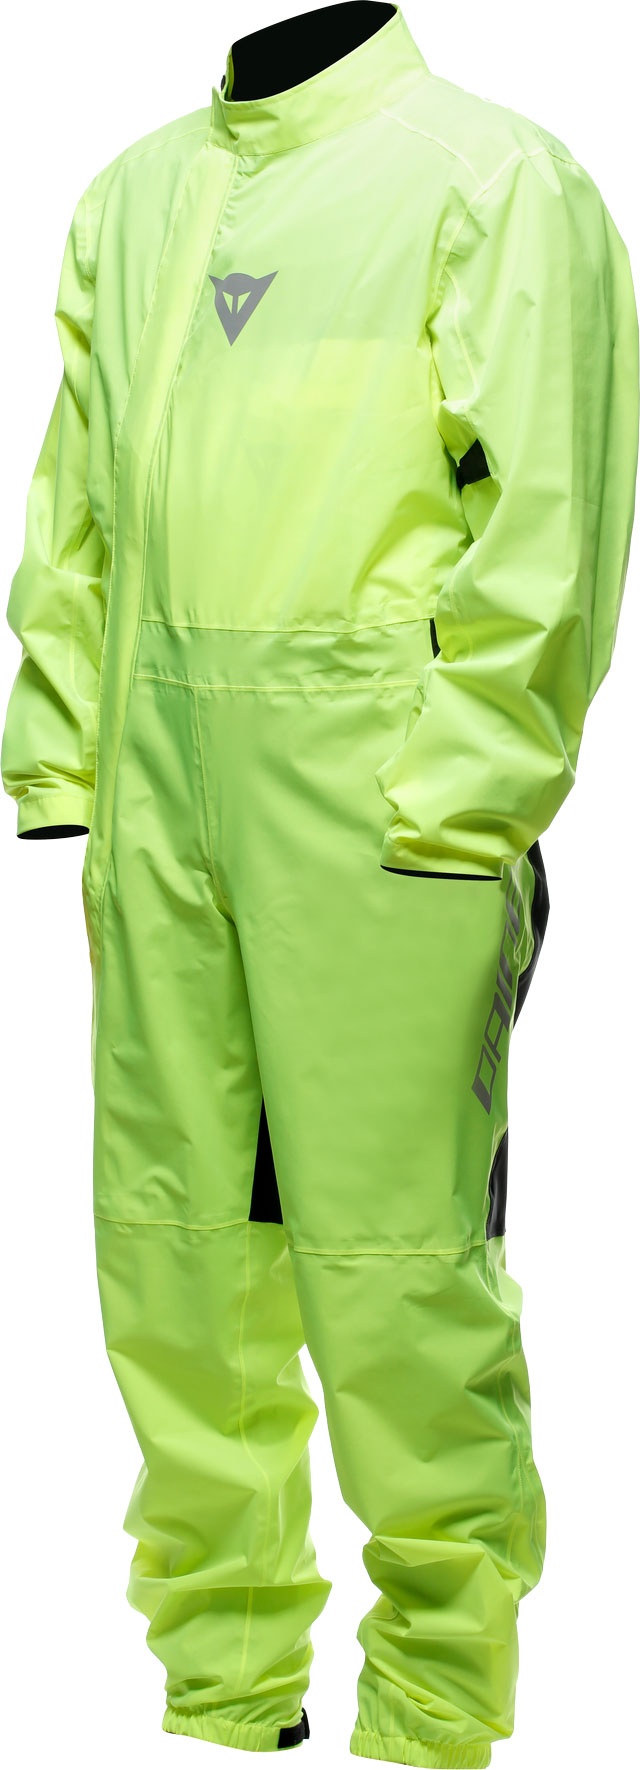 Dainese Ultralight, vêtement de pluie - Jaune Néon - XL